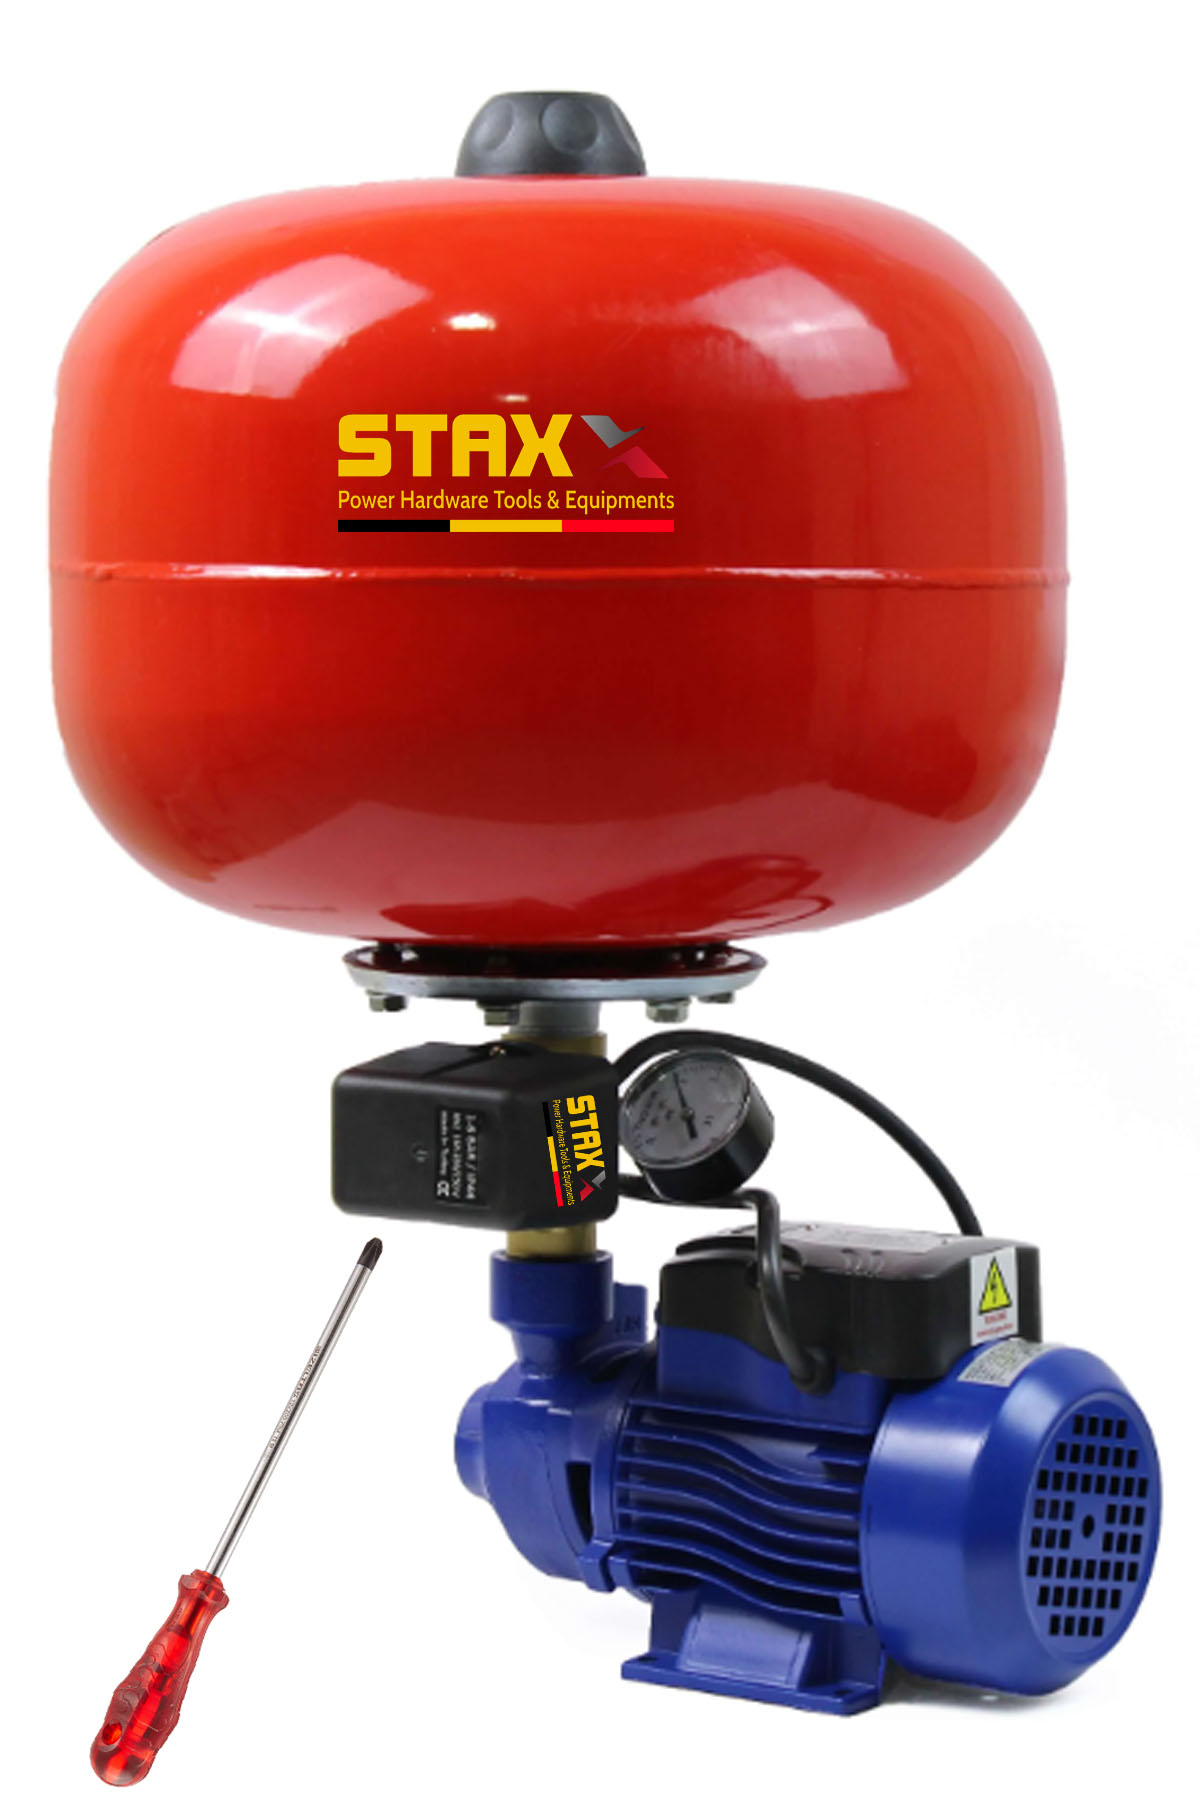 Staxx Bakır Sargı Qpht60 24Lt Küreli Otomatik Paket Hidrofor